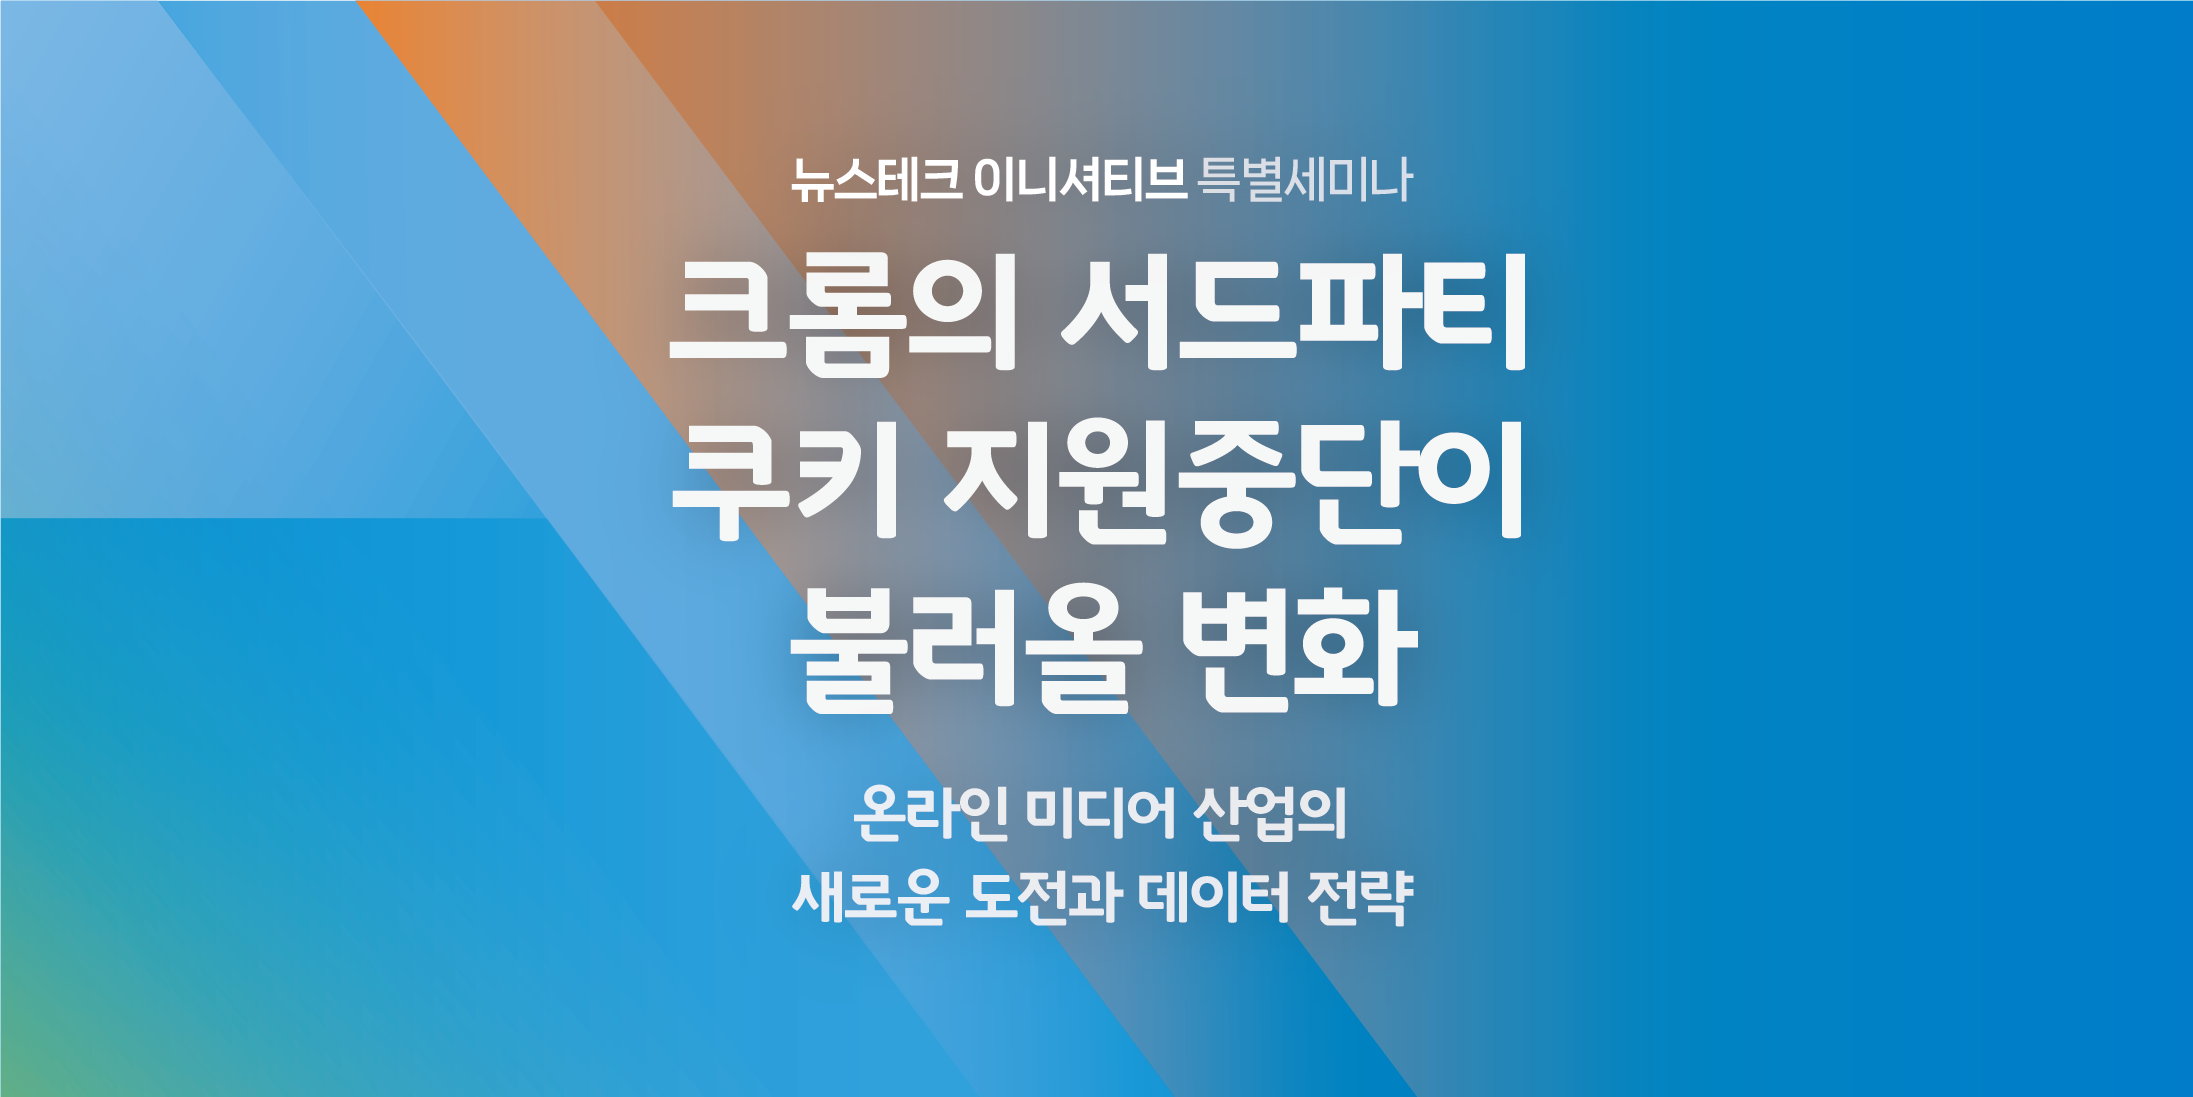 뉴스테크 이니셔티브 특별 세미나 개최 (종료)